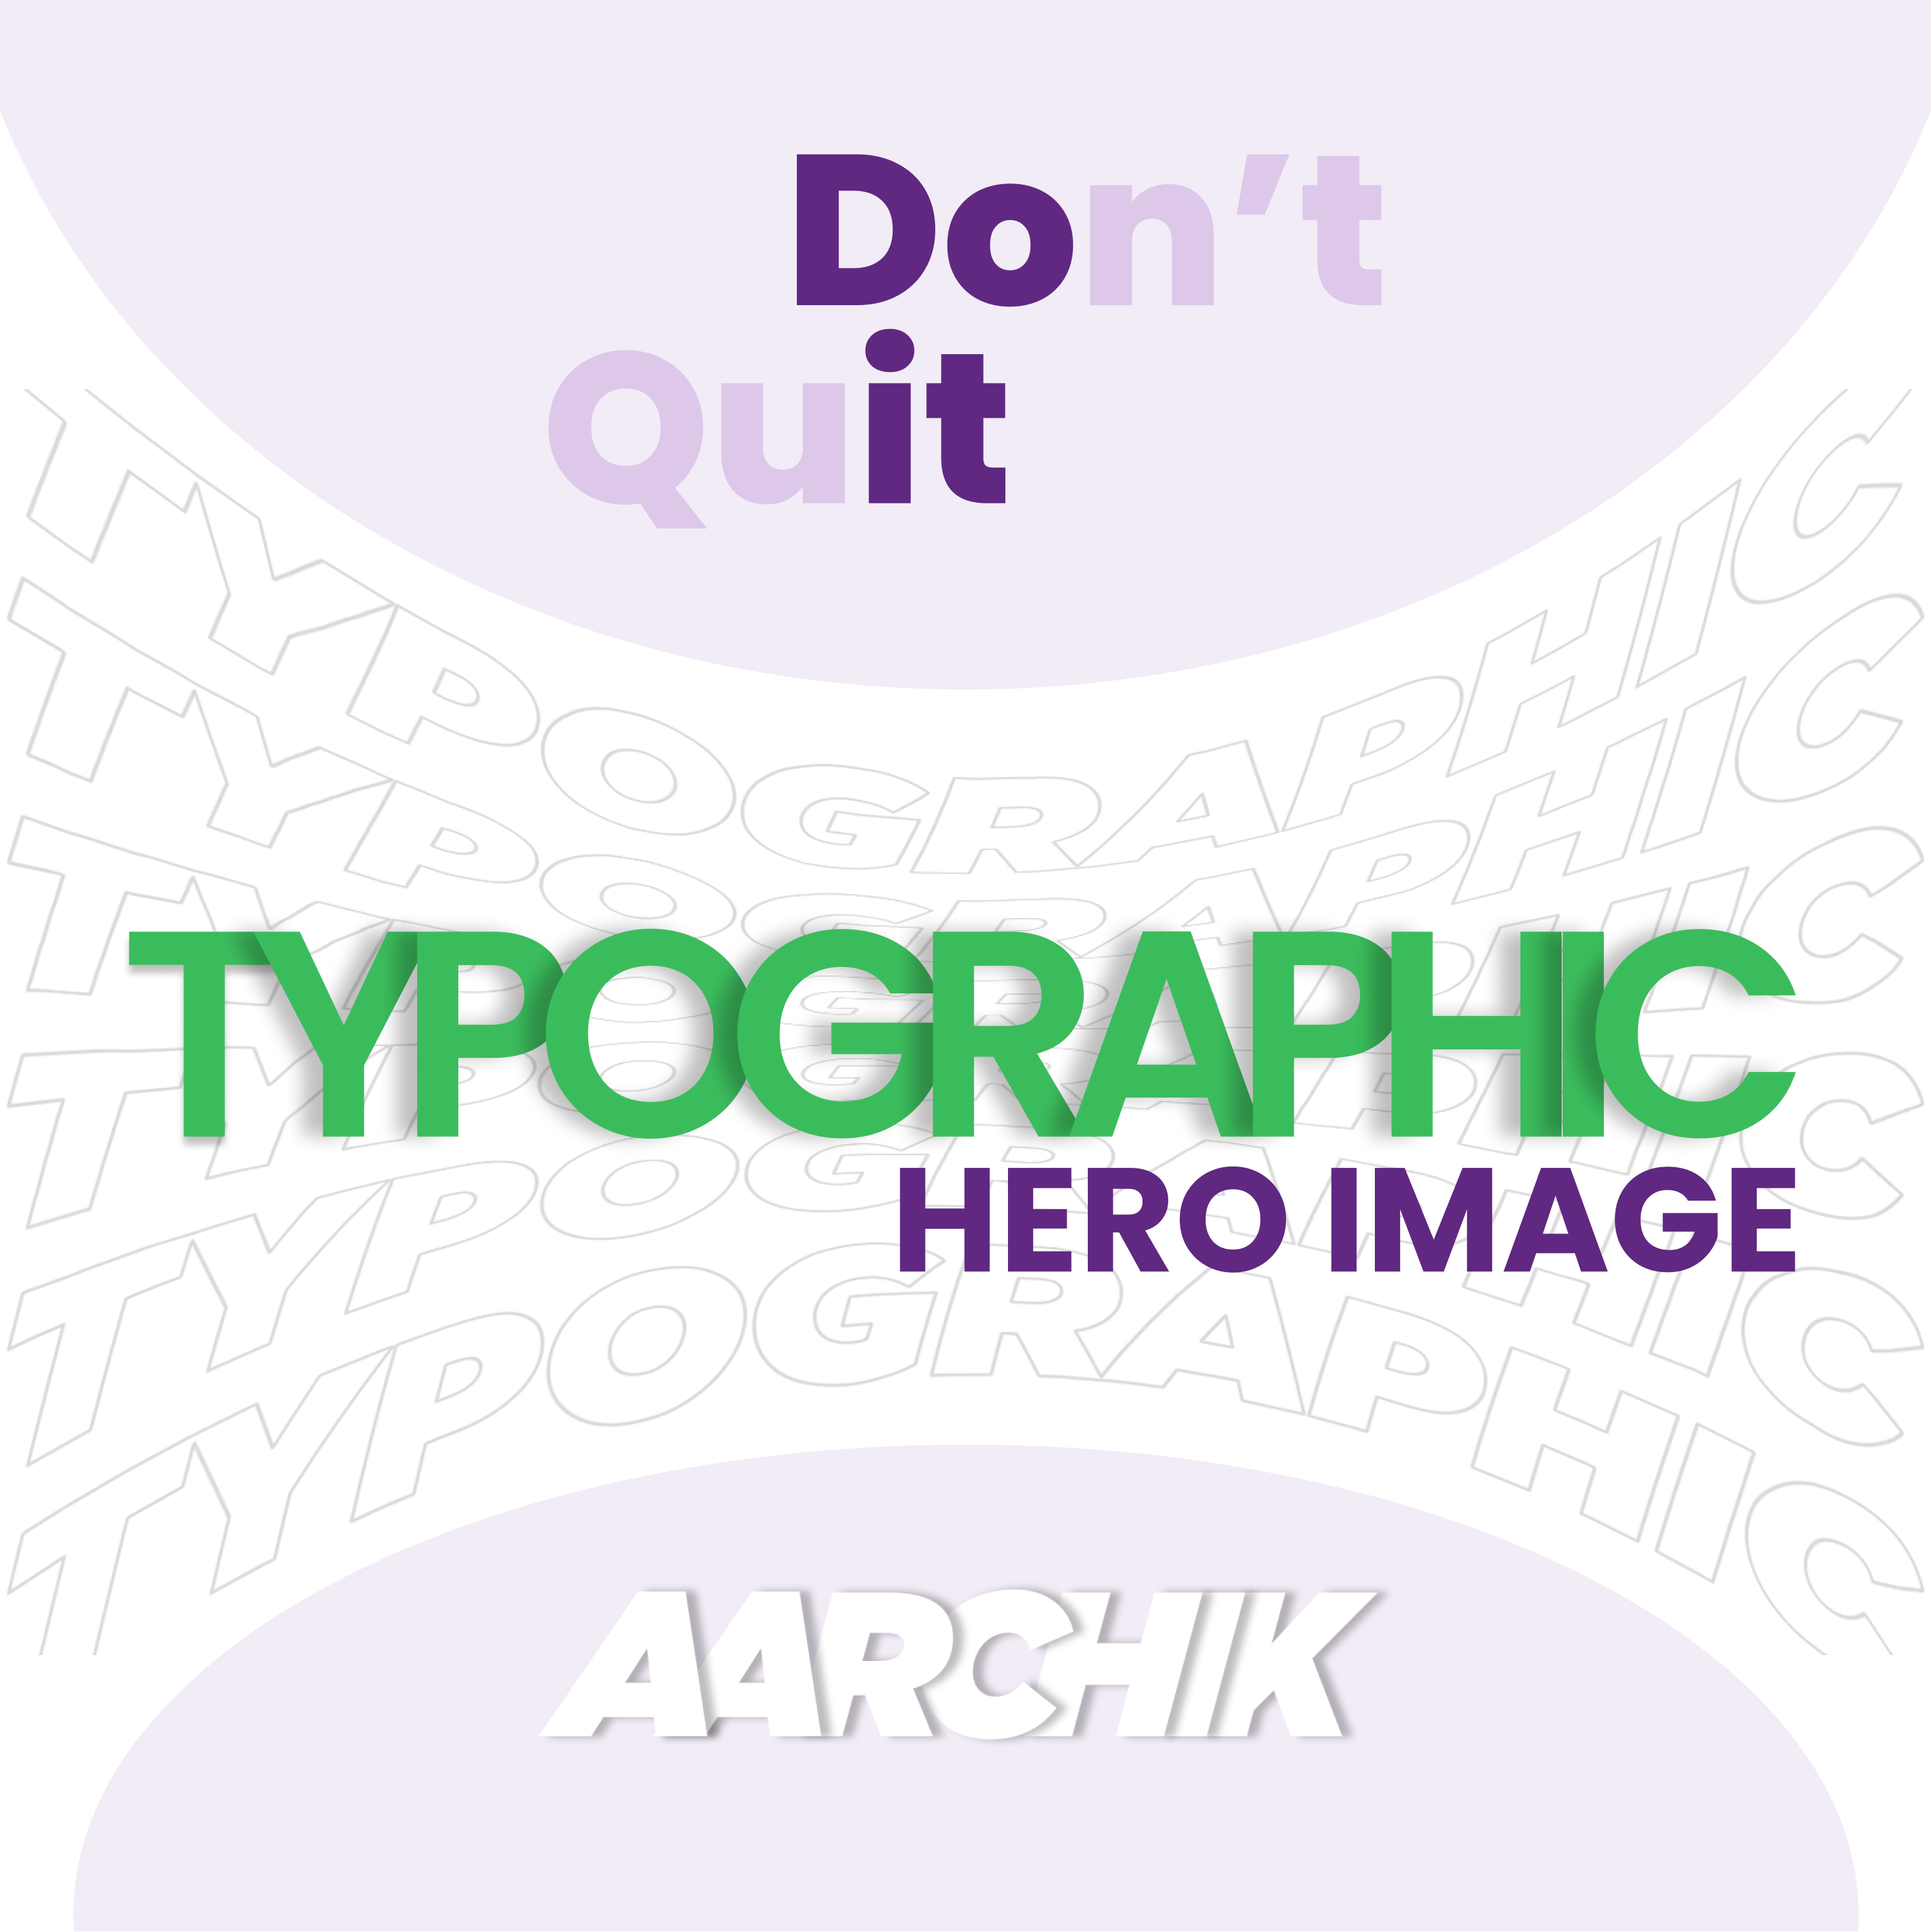 Typographic hero image